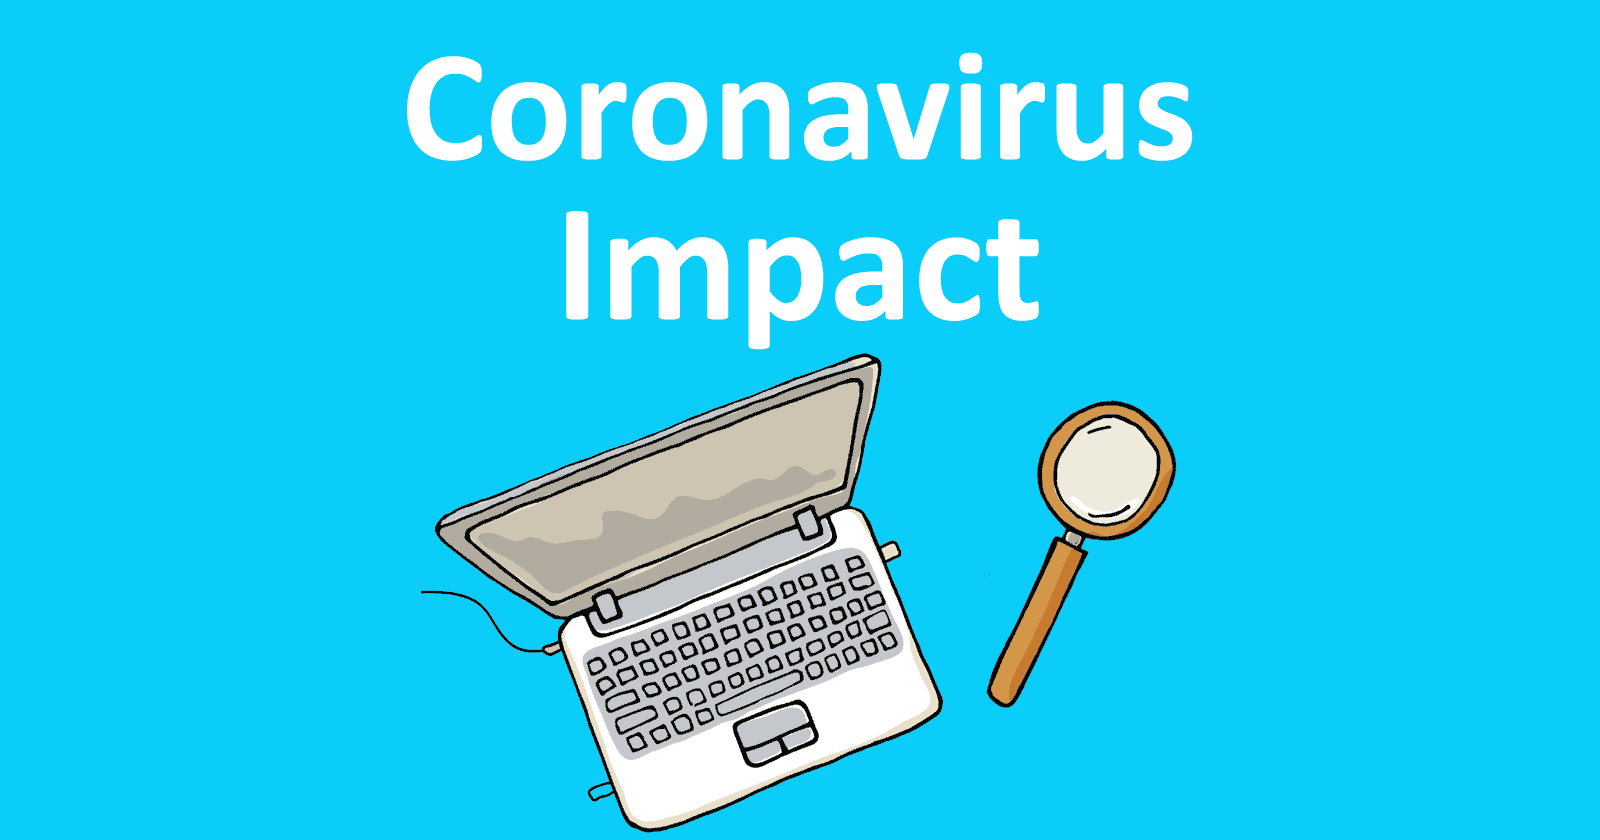 Coronavirus impact